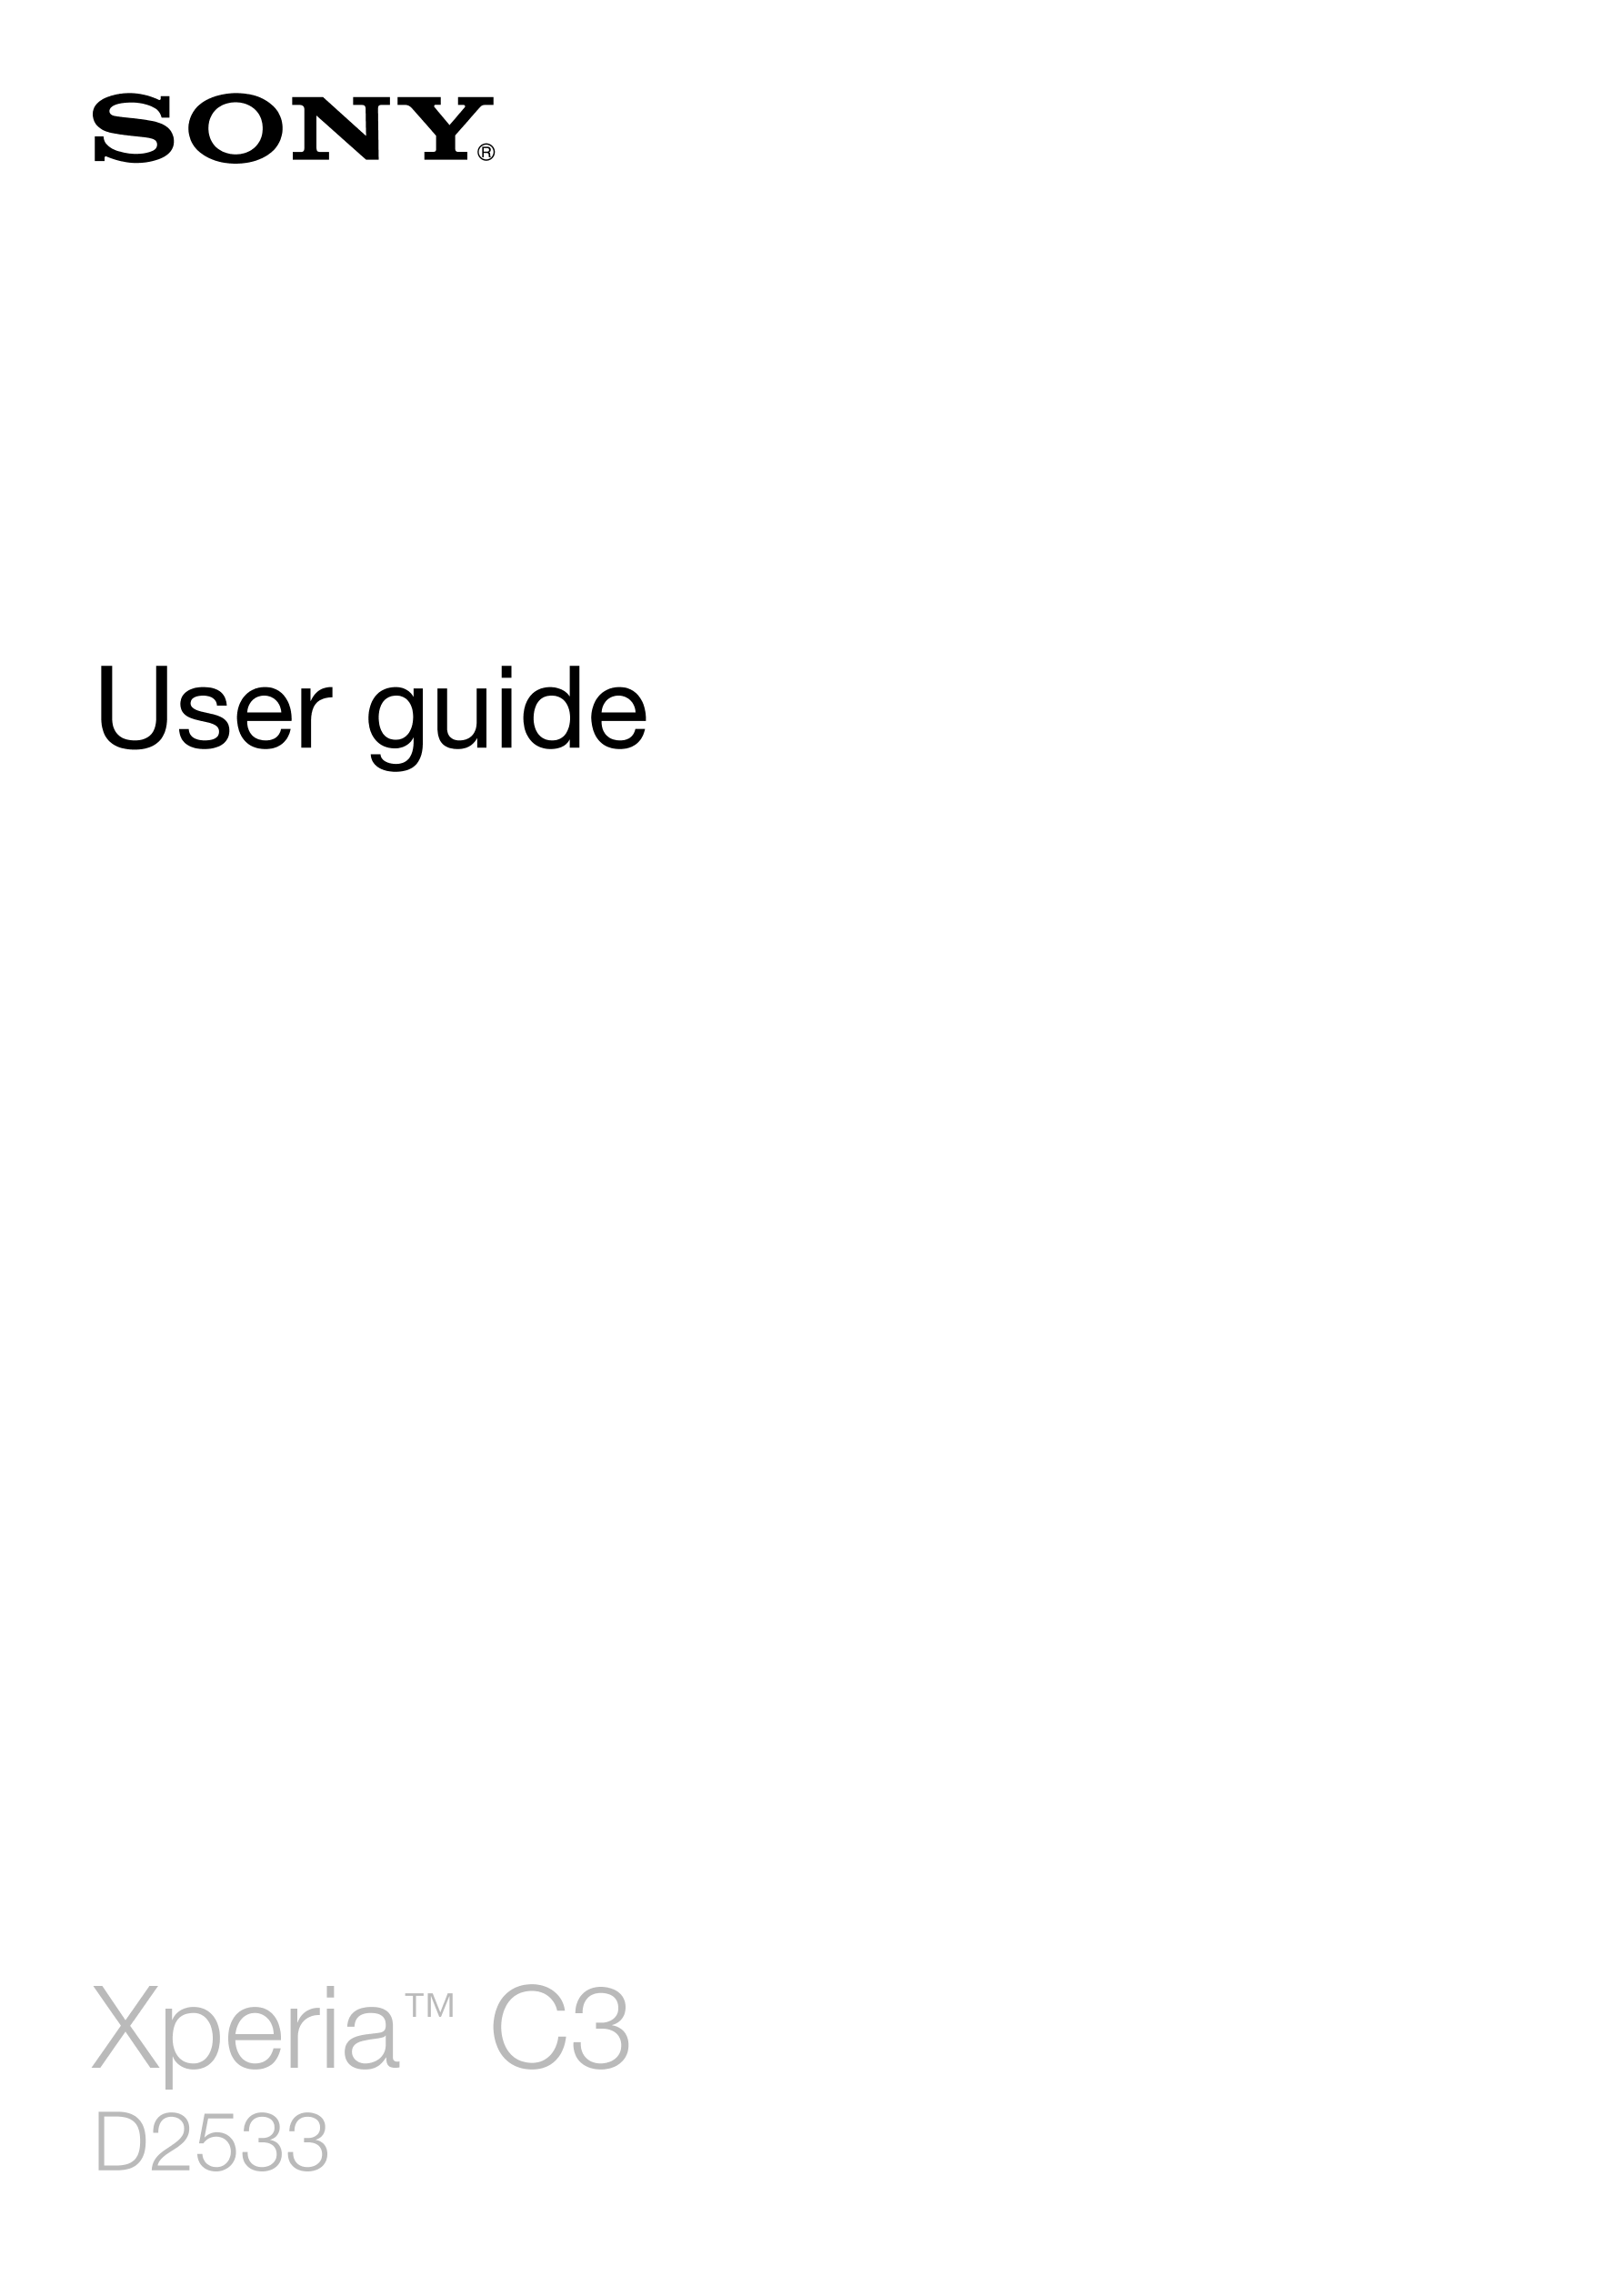 User guide
Xperia™ C3
D2533